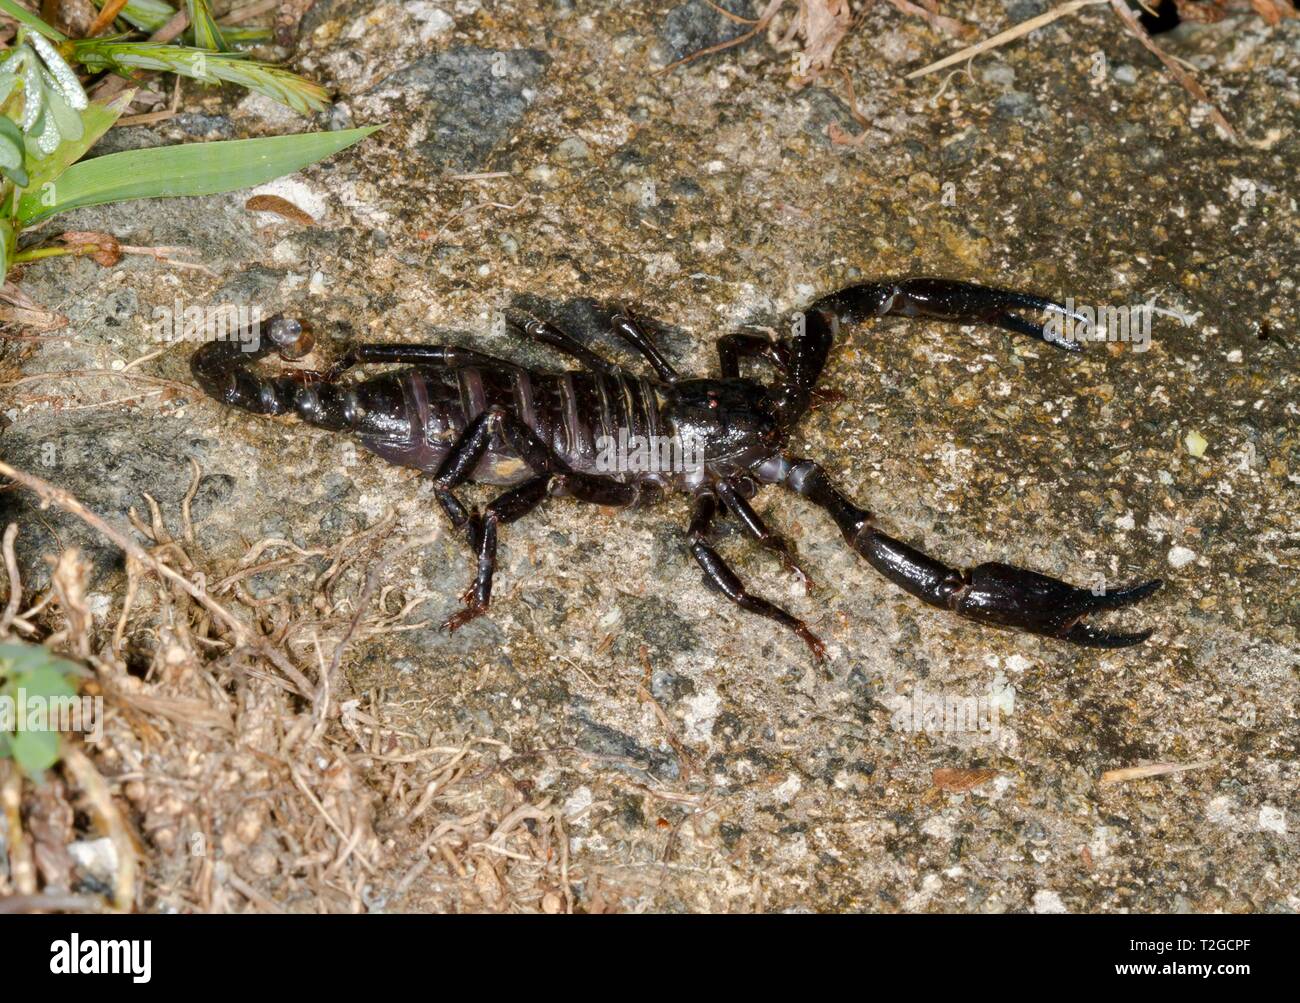 La Malaysian scorpion noir (Heterometrus spinifer), la réserve de Sepilok, Sabah, Bornéo, Malaisie Banque D'Images